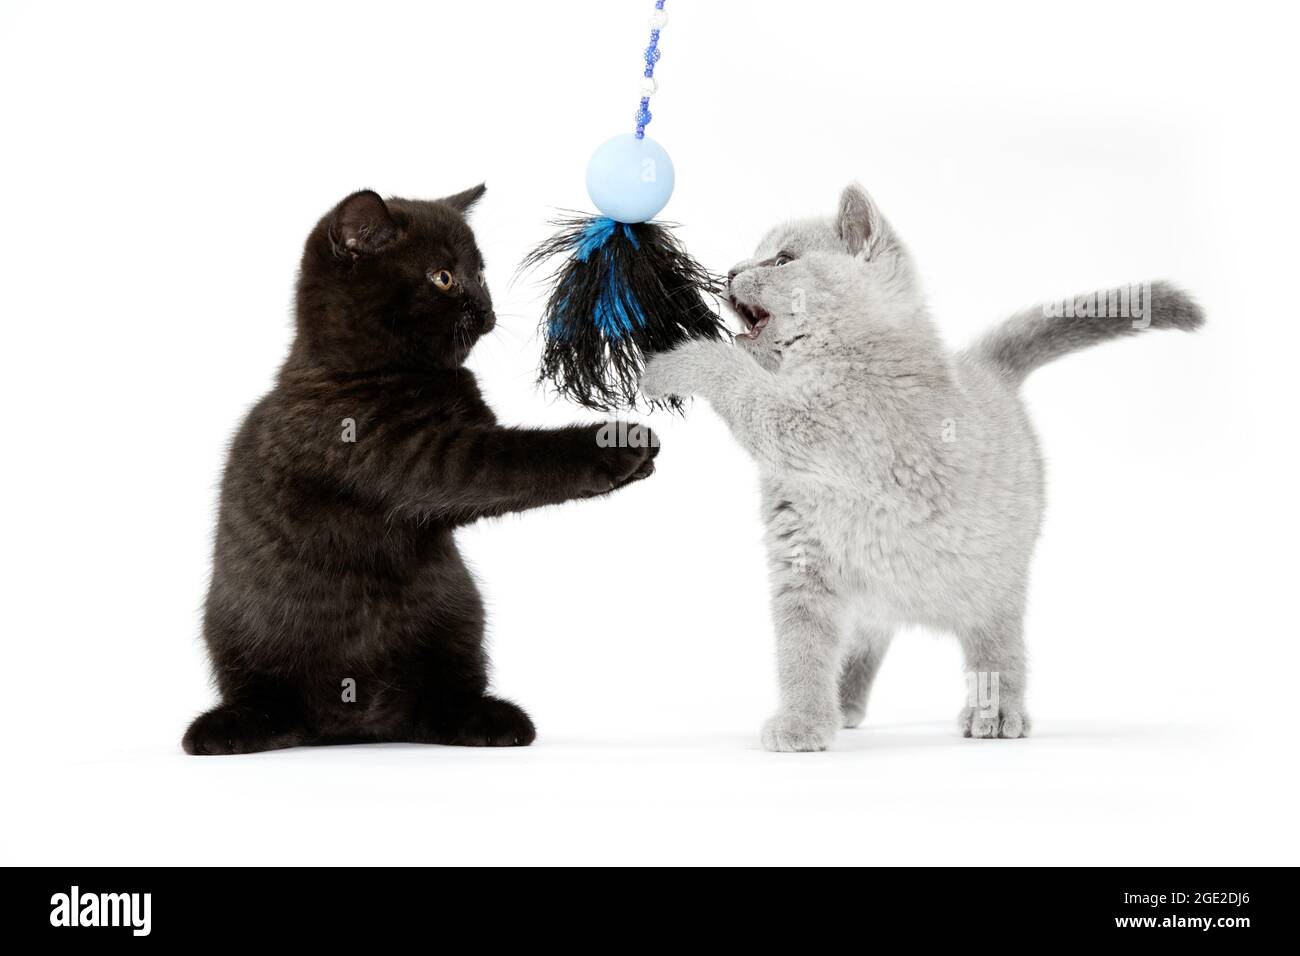 Kurzhaar. Schwarz-graues Kätzchen, das mit einem Federspielzeug spielt. Studiobild vor weißem Hintergrund Stockfoto